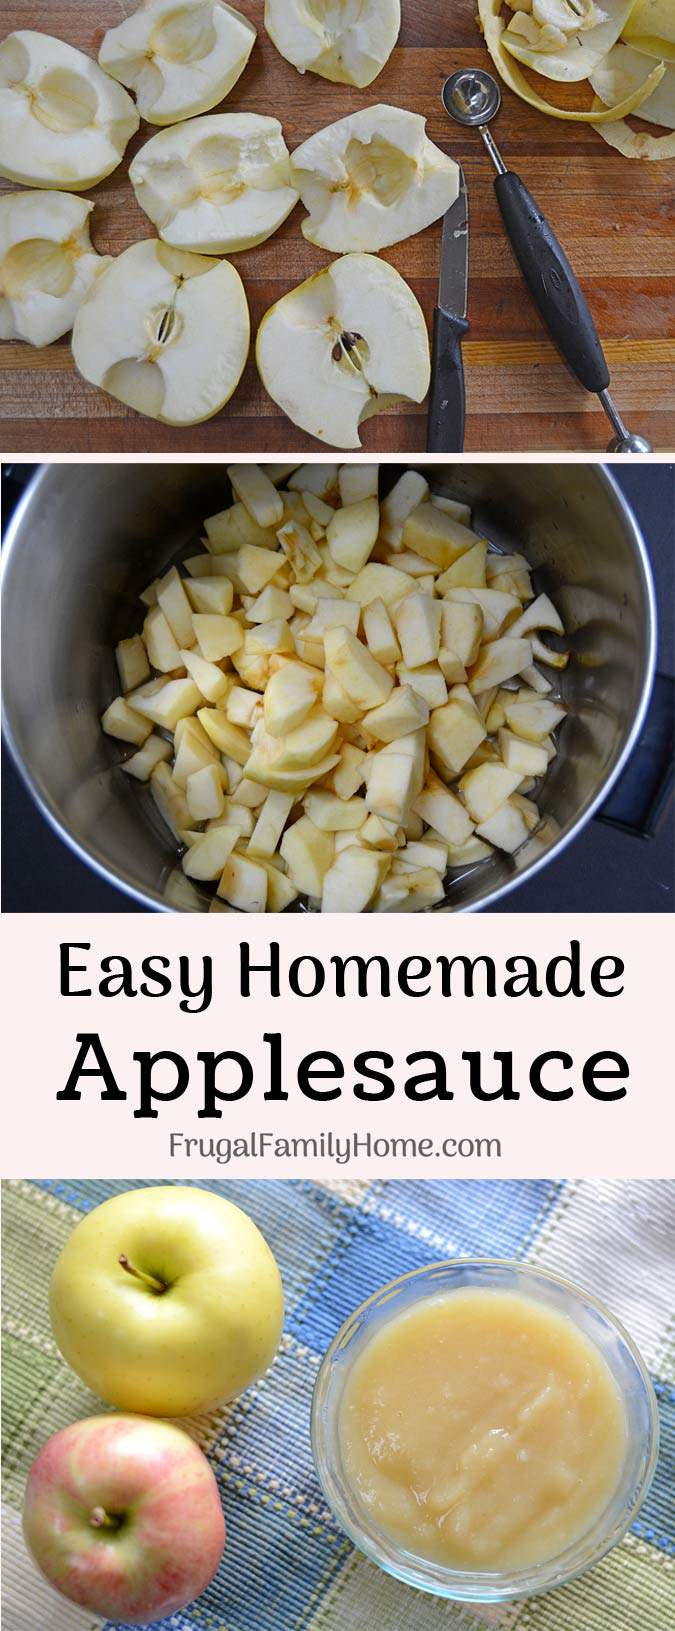 Easy Homemade Applesauce
 How to Make Homemade Applesauce Easy Recipe